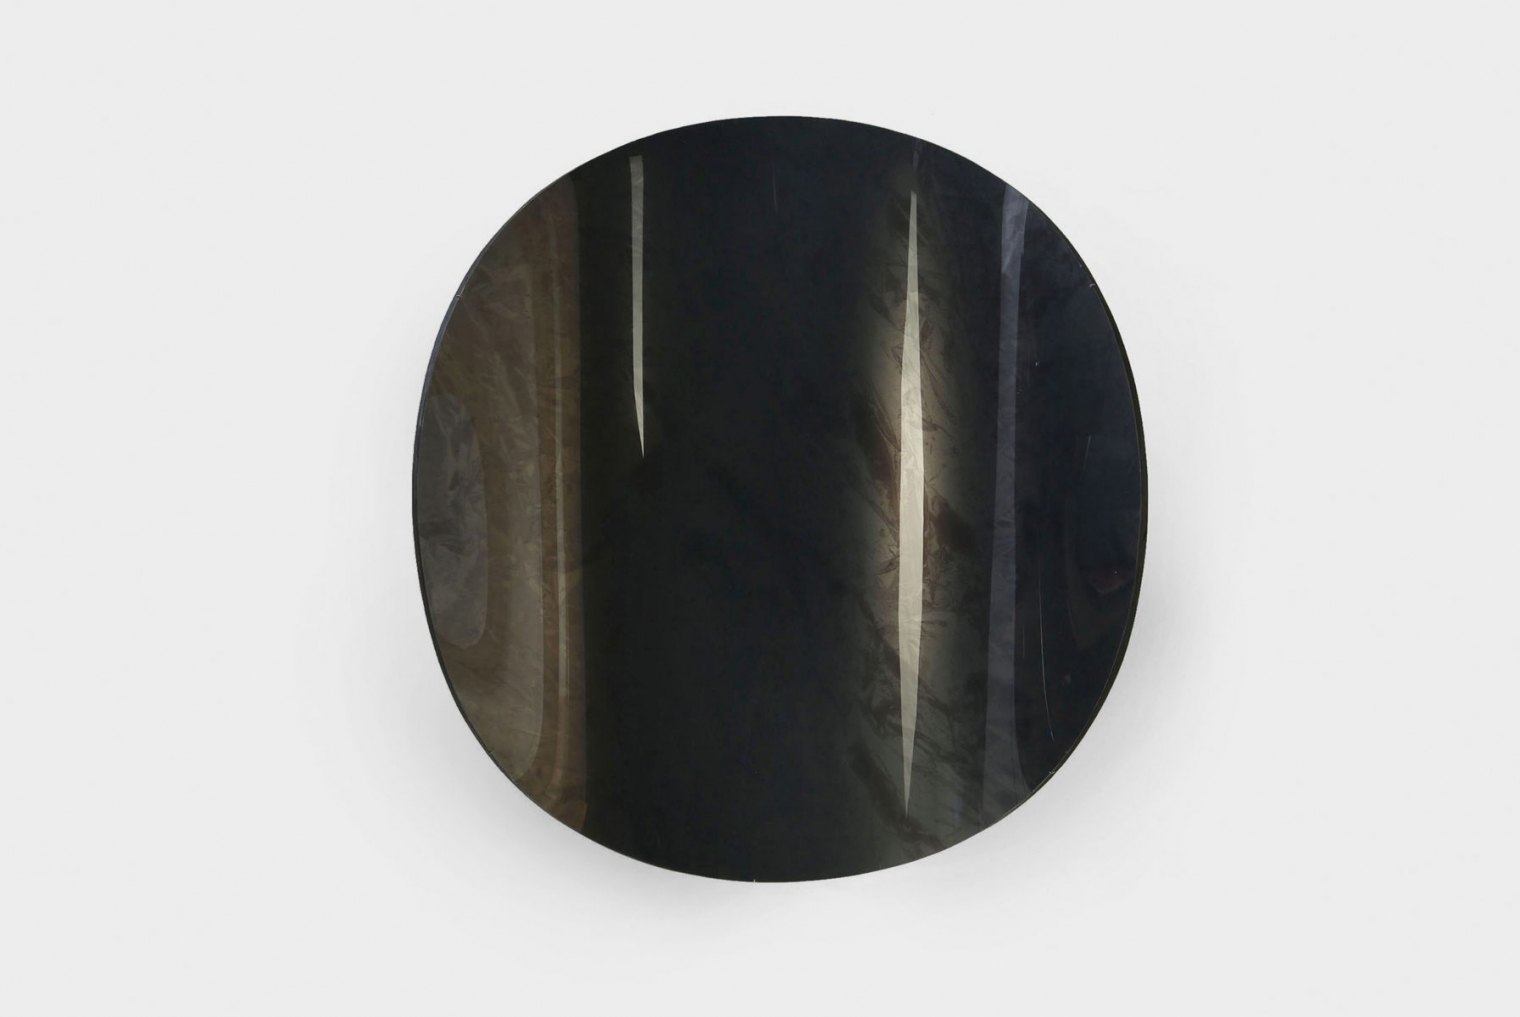 MIRROR/08  Material: wood, plexsi-glass, UV print; Dimension: 100 x 85 x 15 cm; Date: 2013-2015